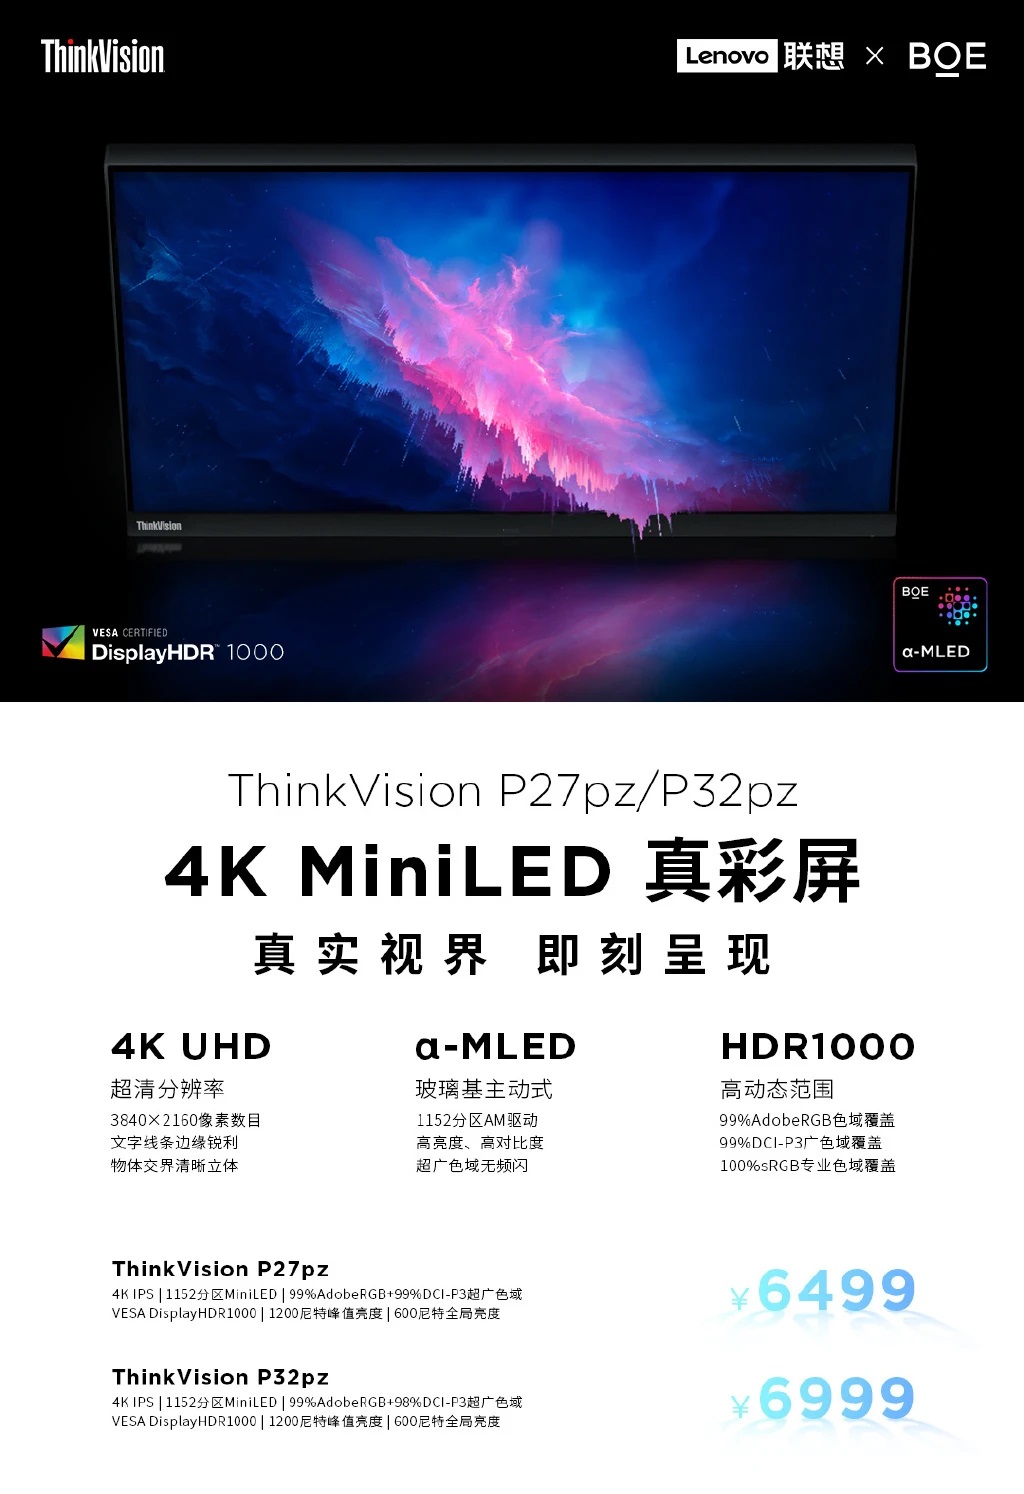 Lenovo представила мониторы ThinkVision P27pz и ThinkVision P32pz с 4K-экранами